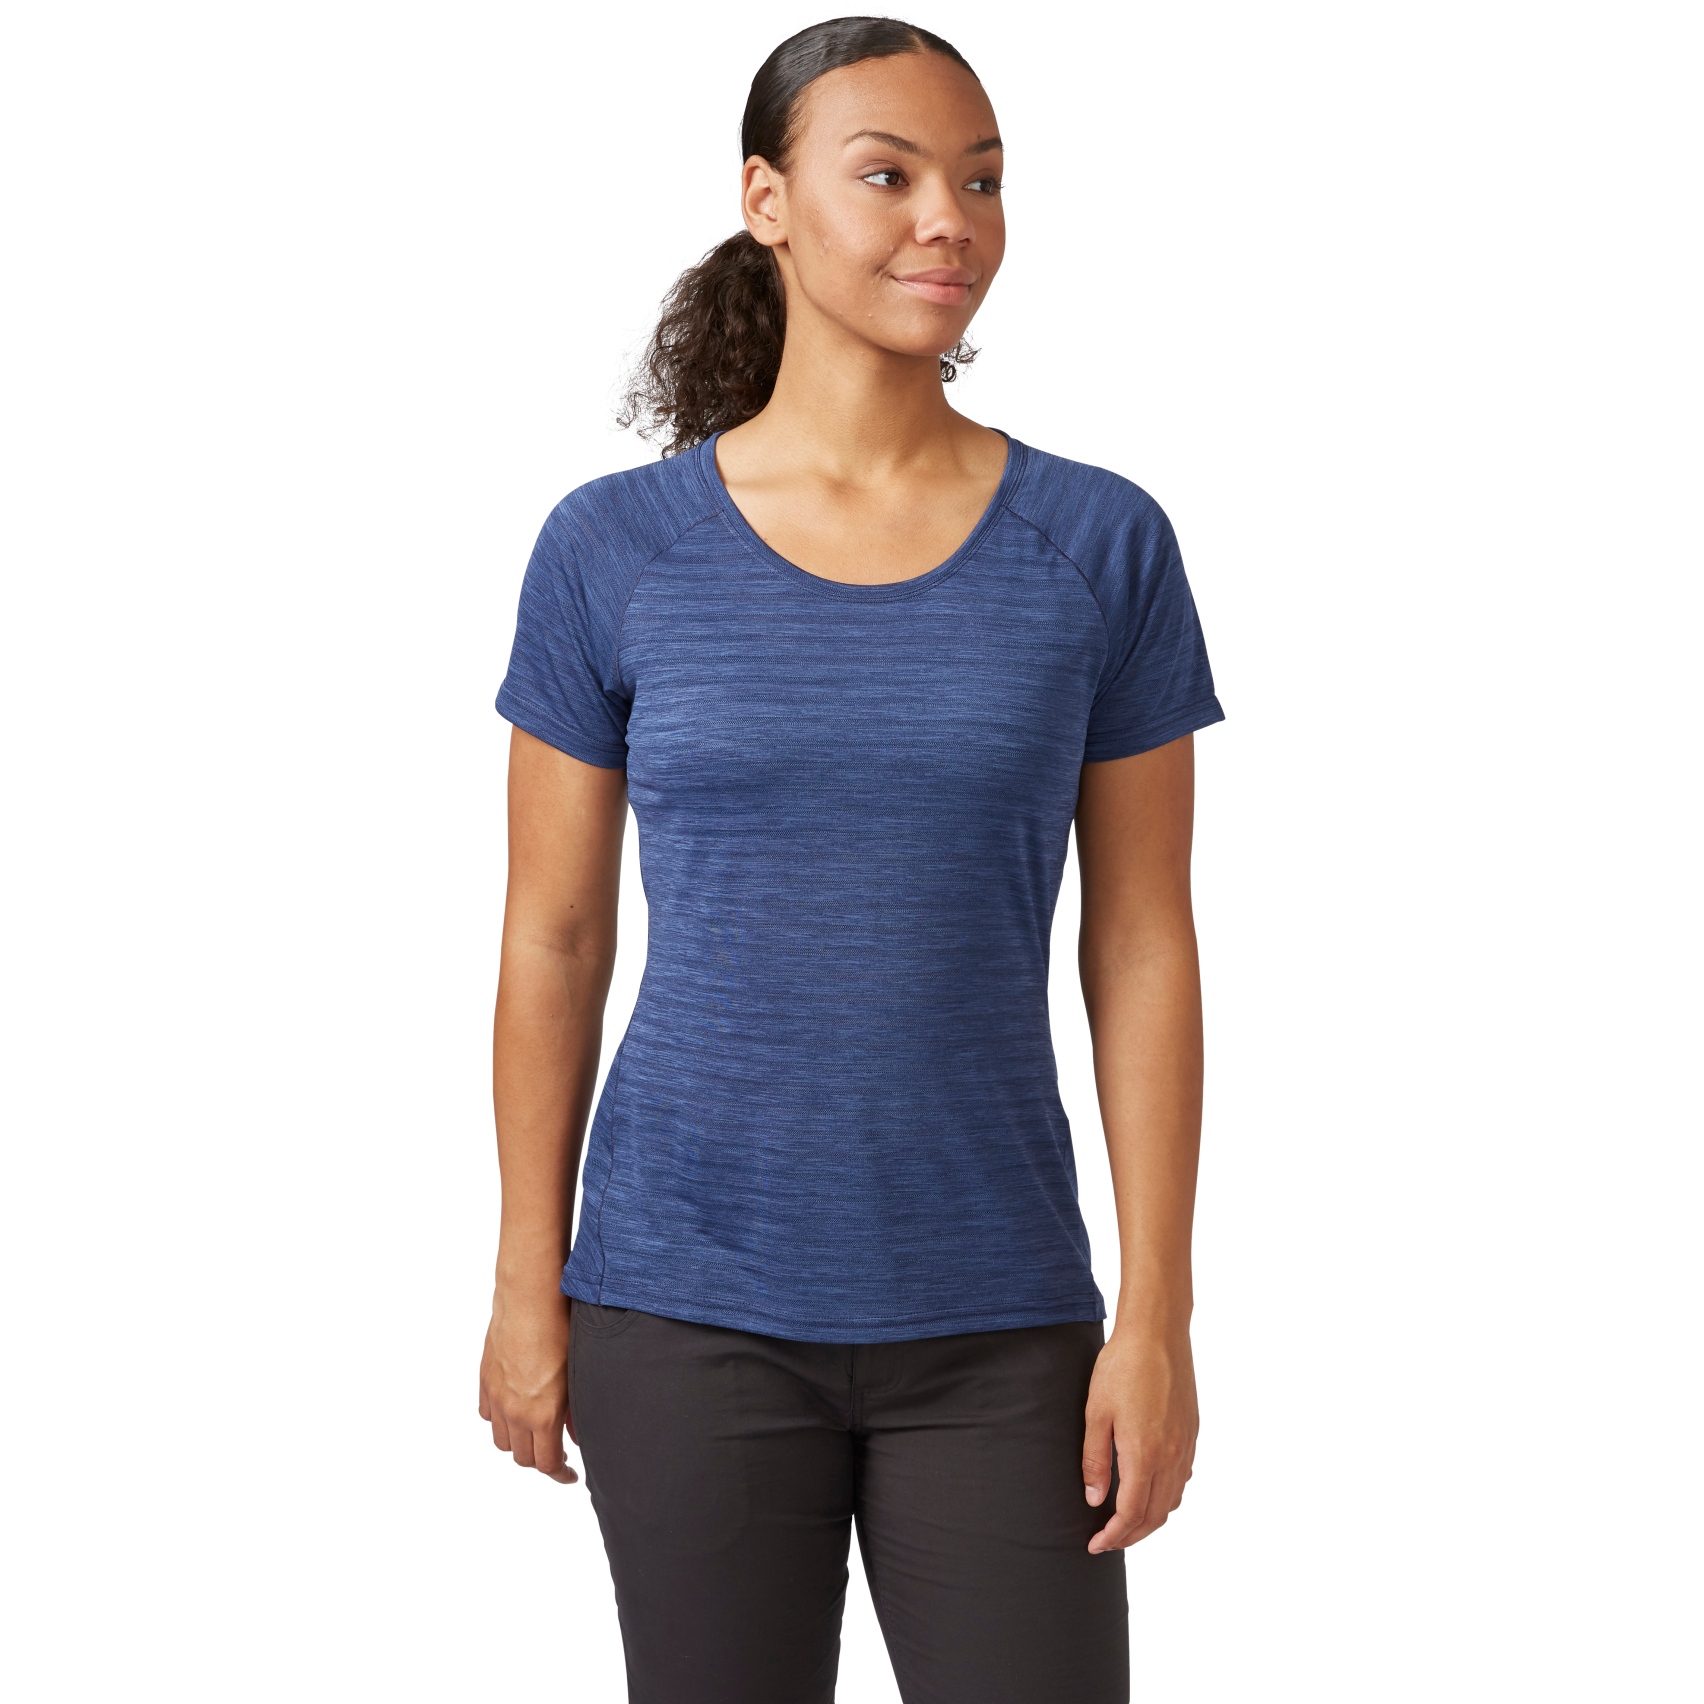 Produktbild von Rab Wisp T-Shirt Damen - patriot blue